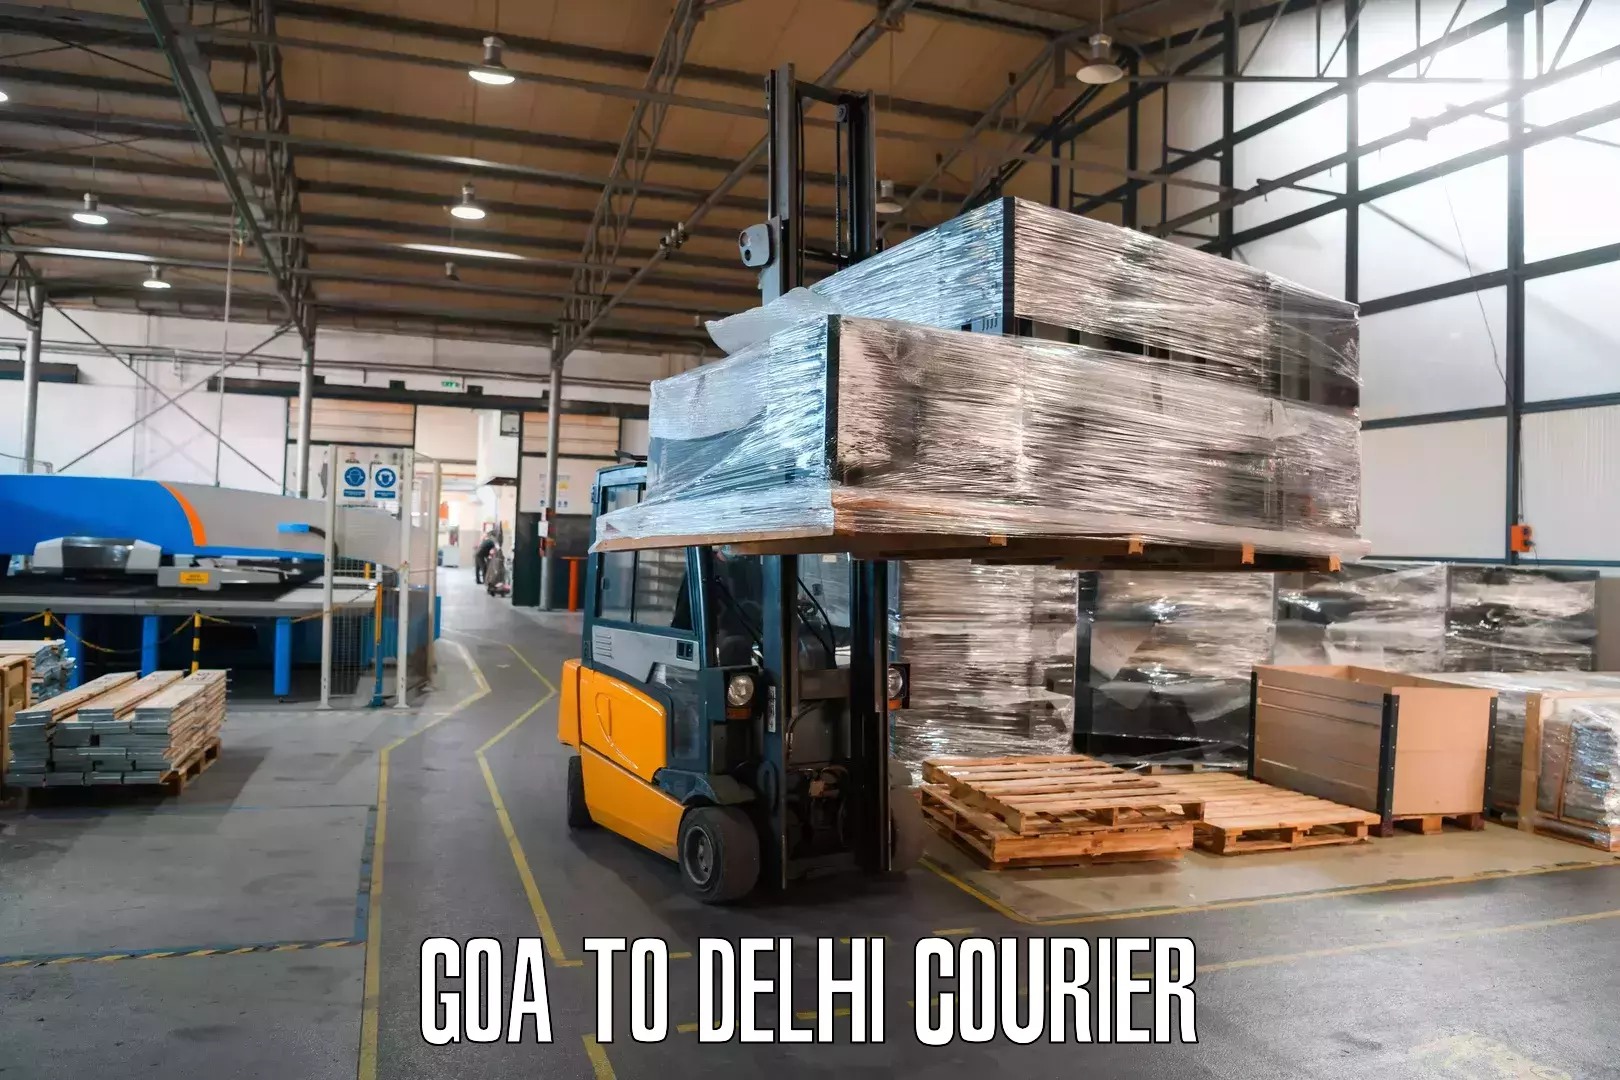 Digital courier platforms Goa to Indraprastha